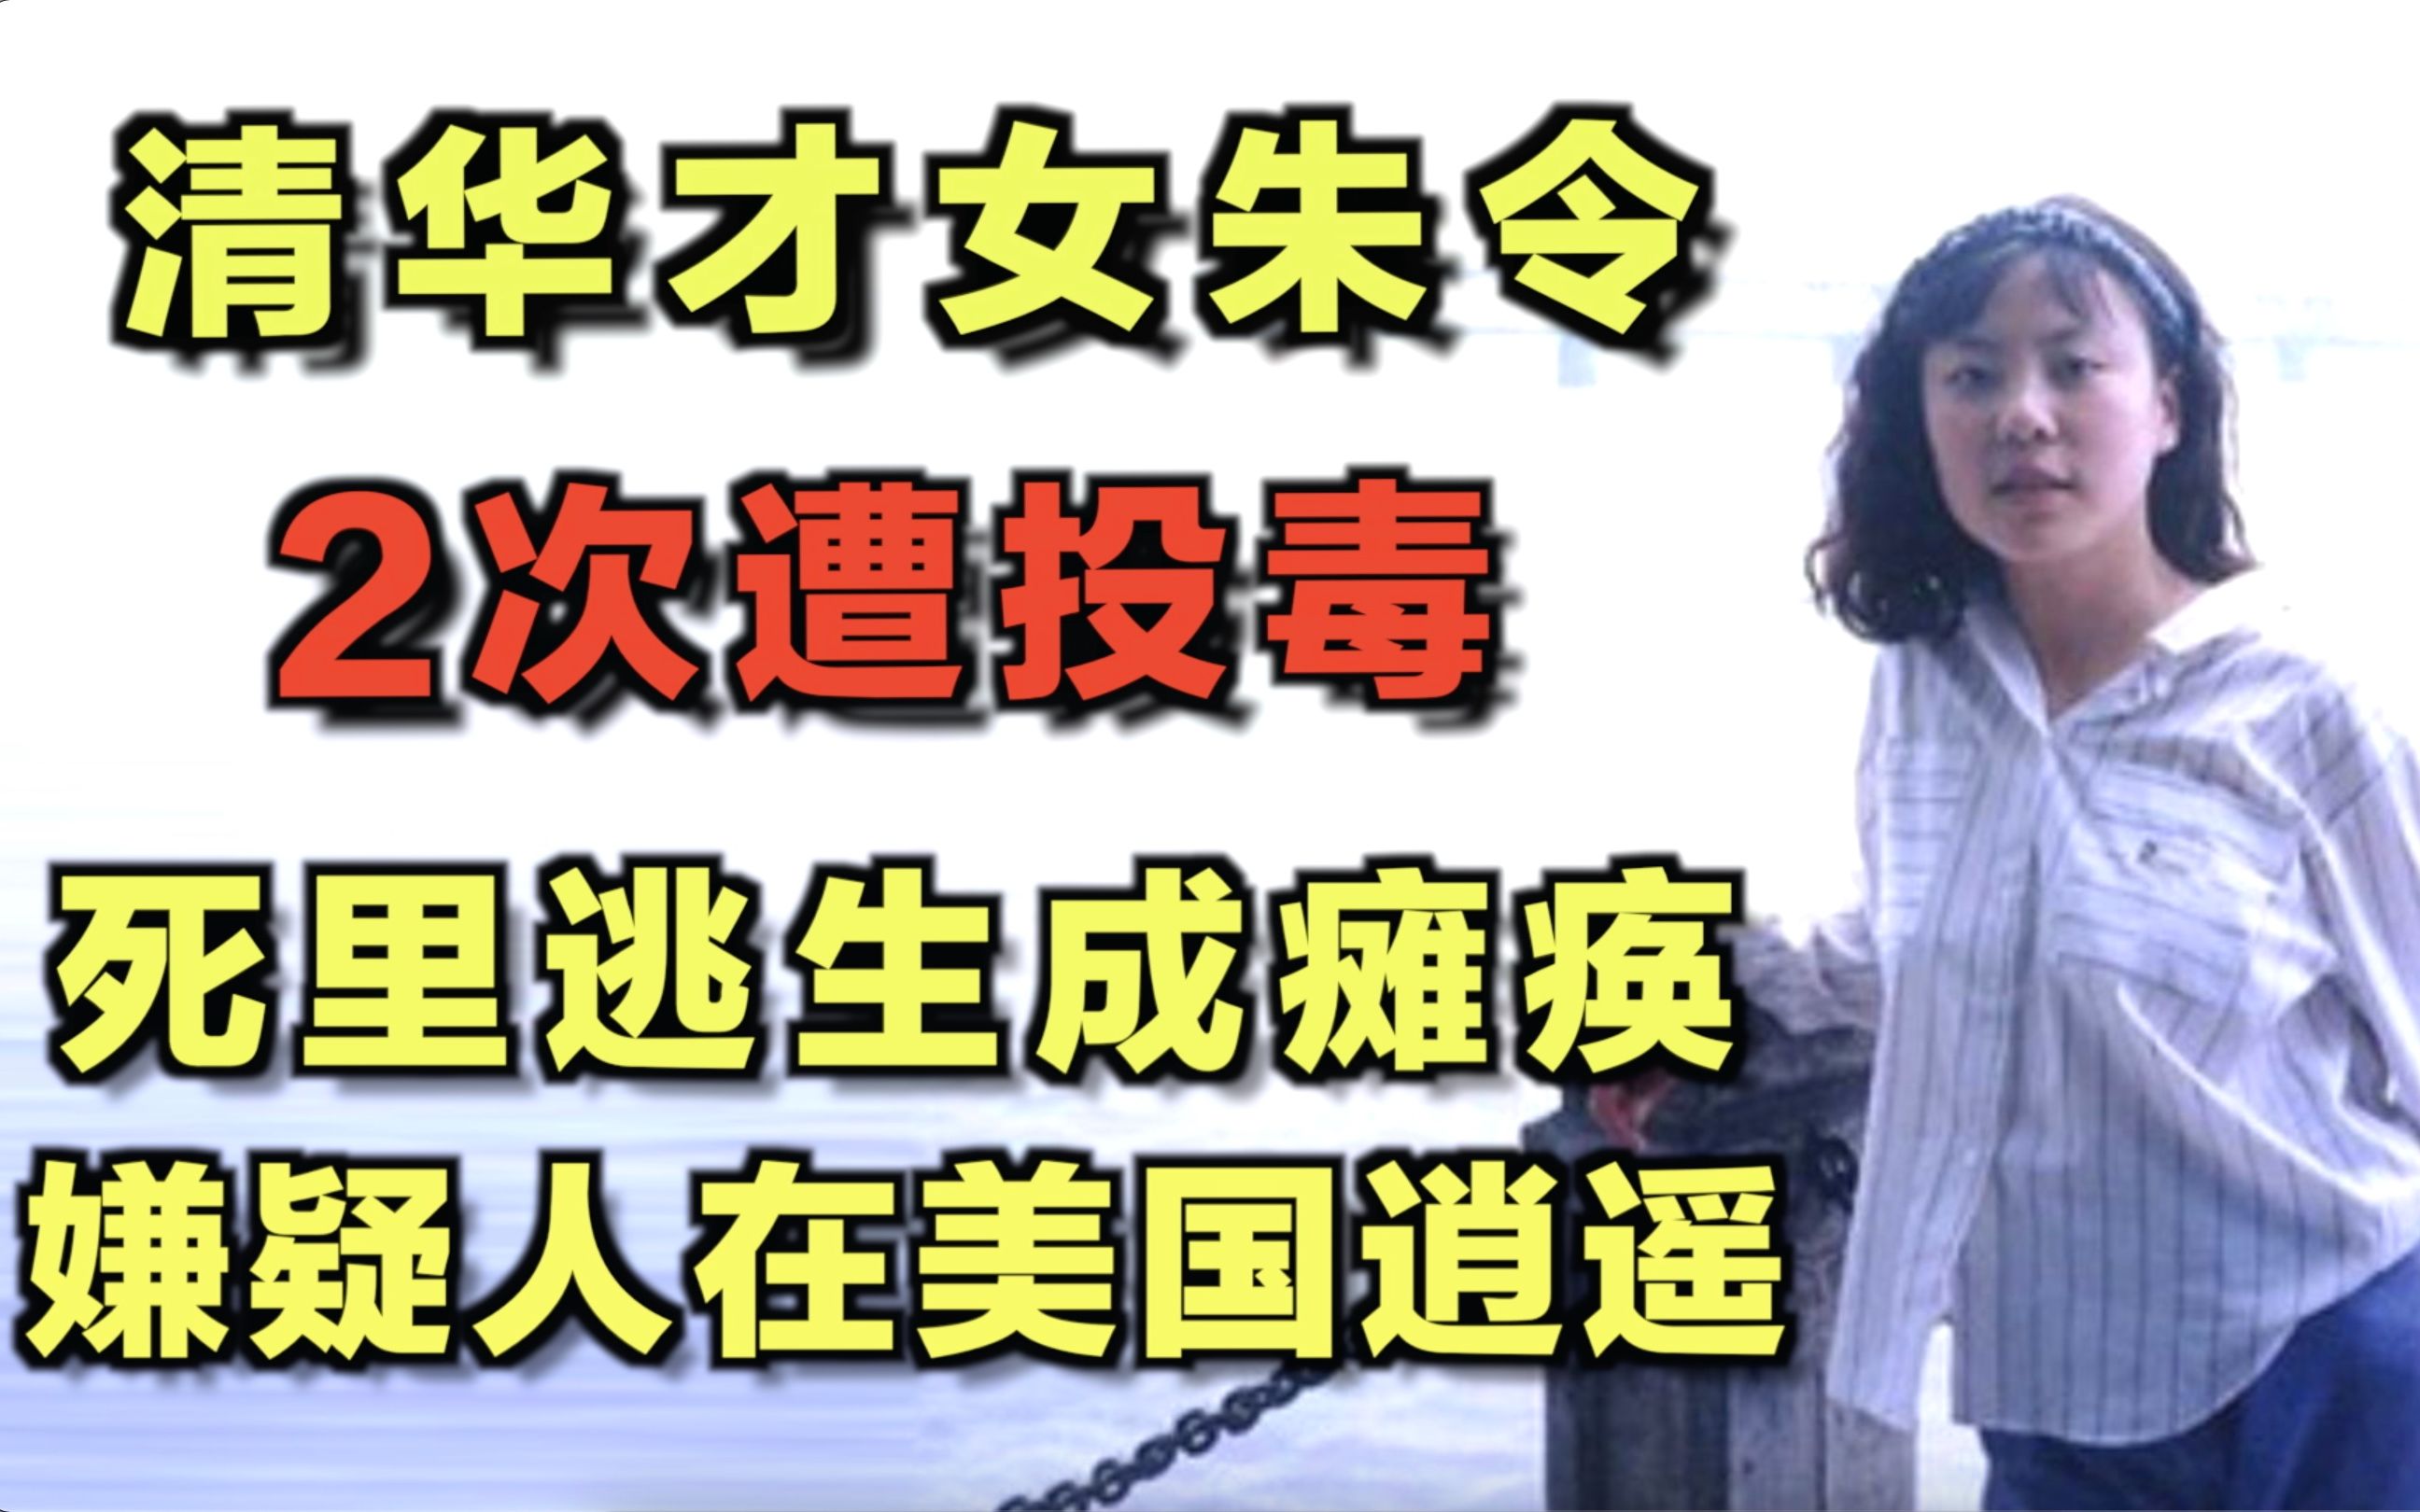 清华“铊中毒”受害者朱令去世 警方立案调查至今无果 代理律师称此案不会因此终结-新闻频道-和讯网